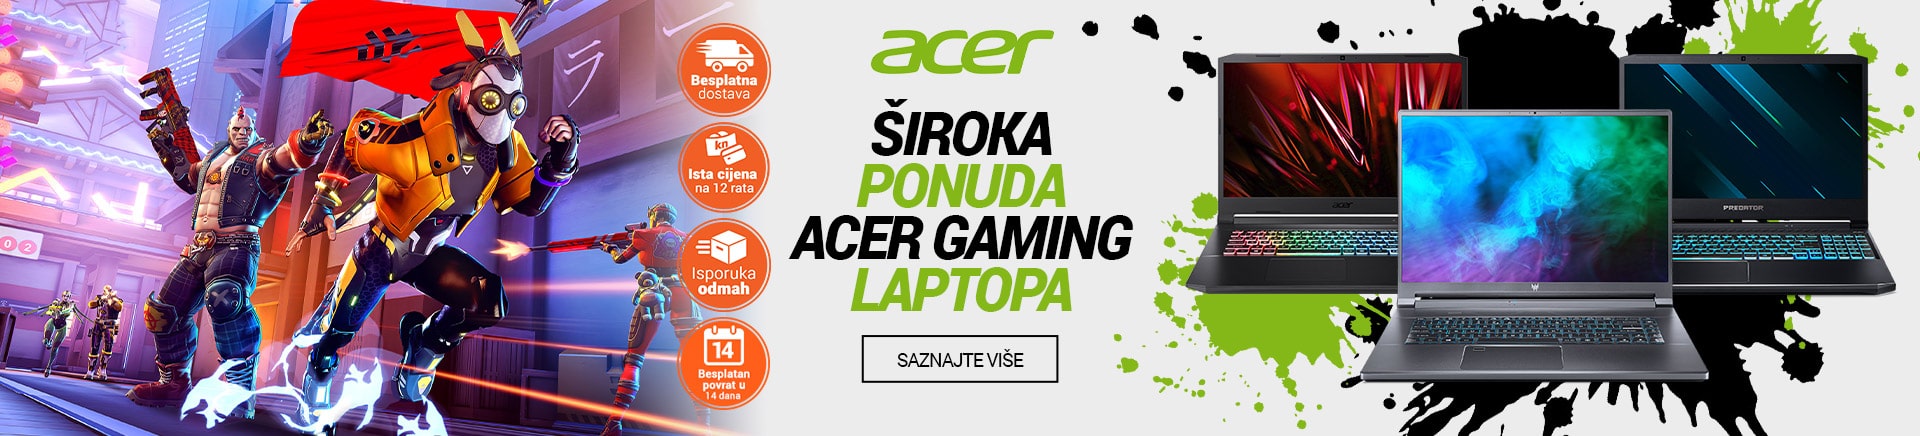 Acer - Široka ponuda Acer gaming laptopa